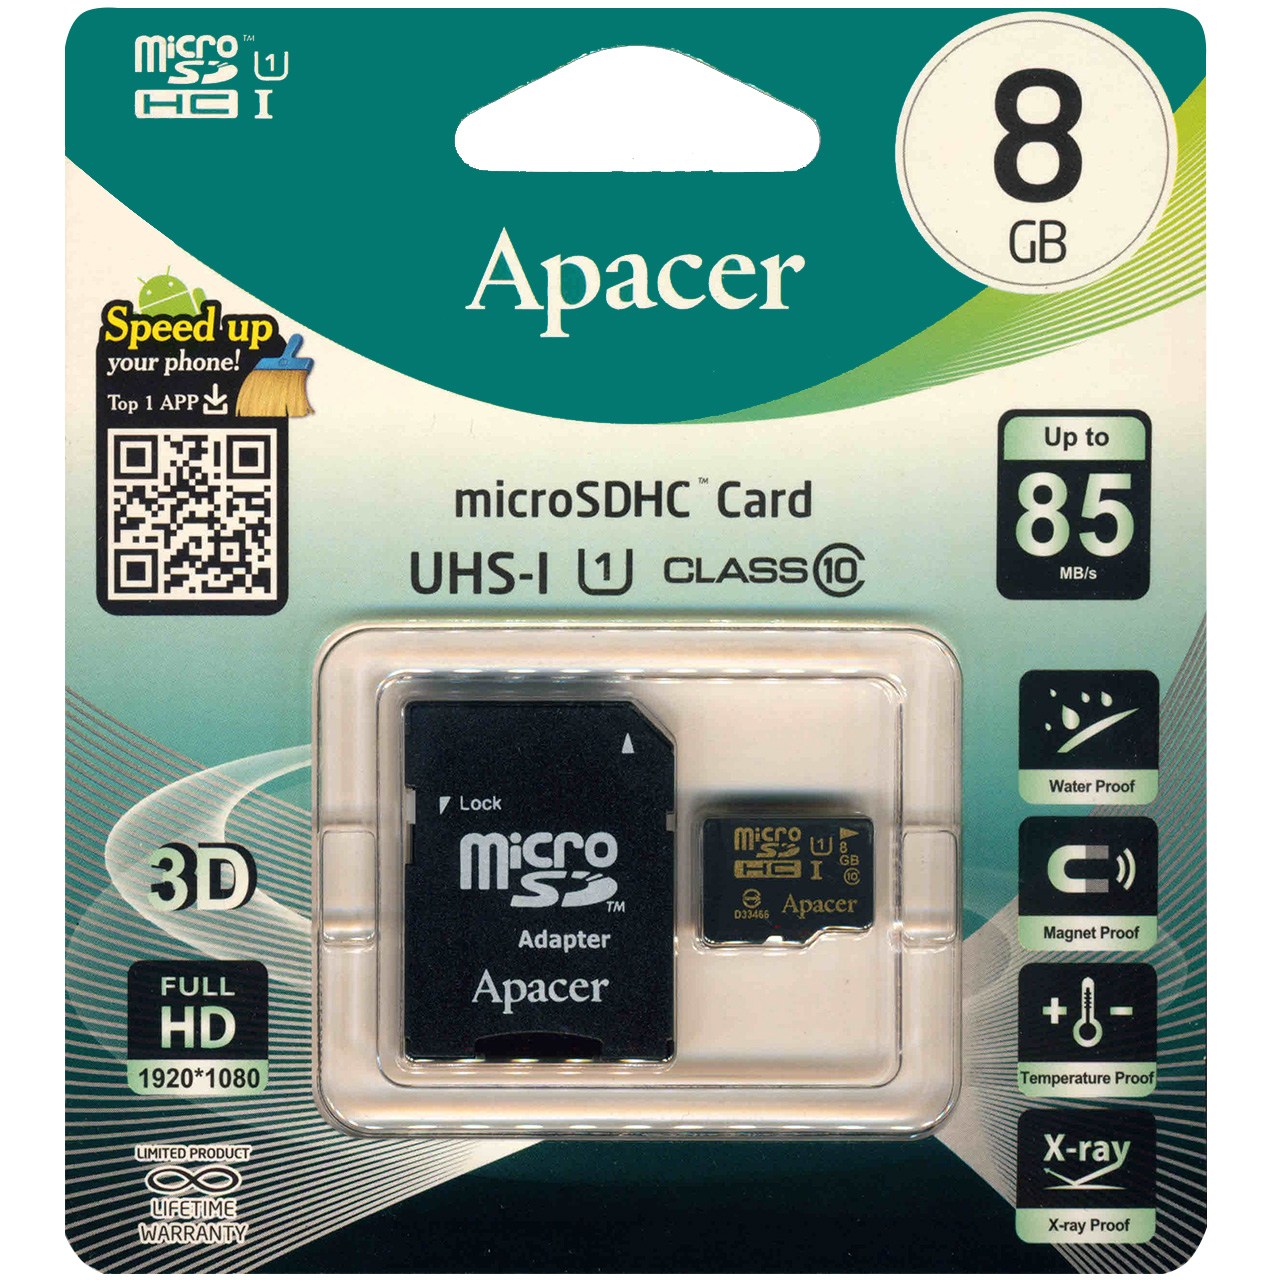 کارت حافظه microSDHC اپیسر کلاس 10 استاندارد UHS-I U1 سرعت 85MBps همراه با آداپتور SD ظرفیت 8 گیگابایت